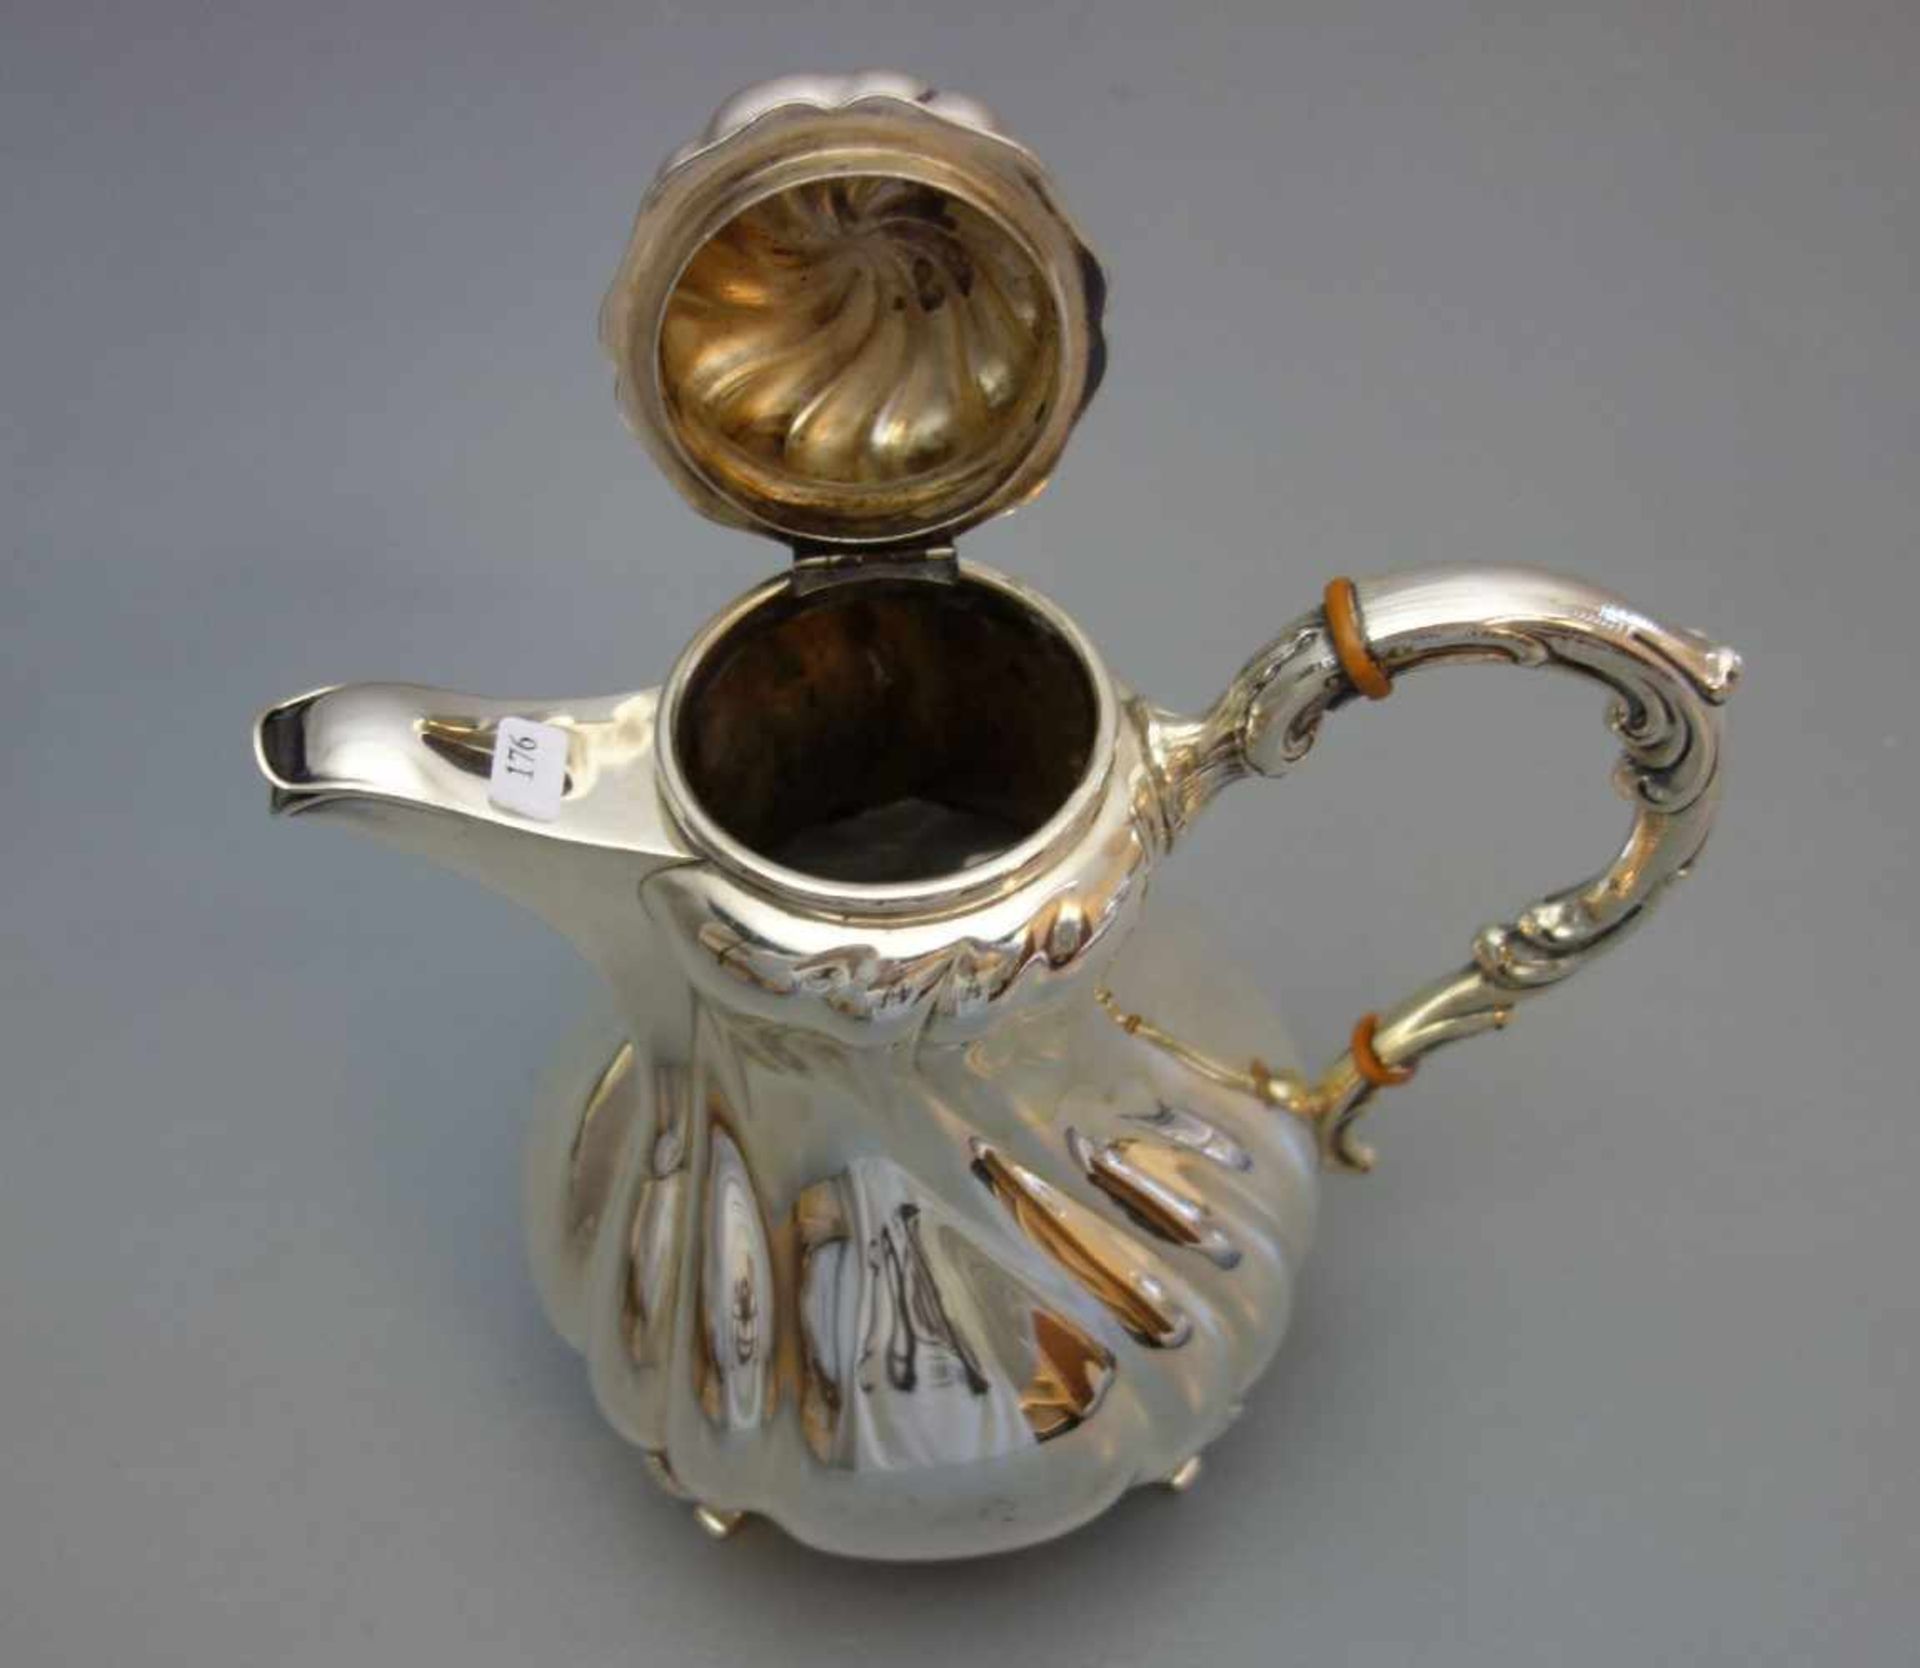 SILBERNE KAFFEEKANNE / silver coffee pot, deutsch, 20. Jh., 925er Silber (764 Gramm), Manufaktur - Image 4 of 4